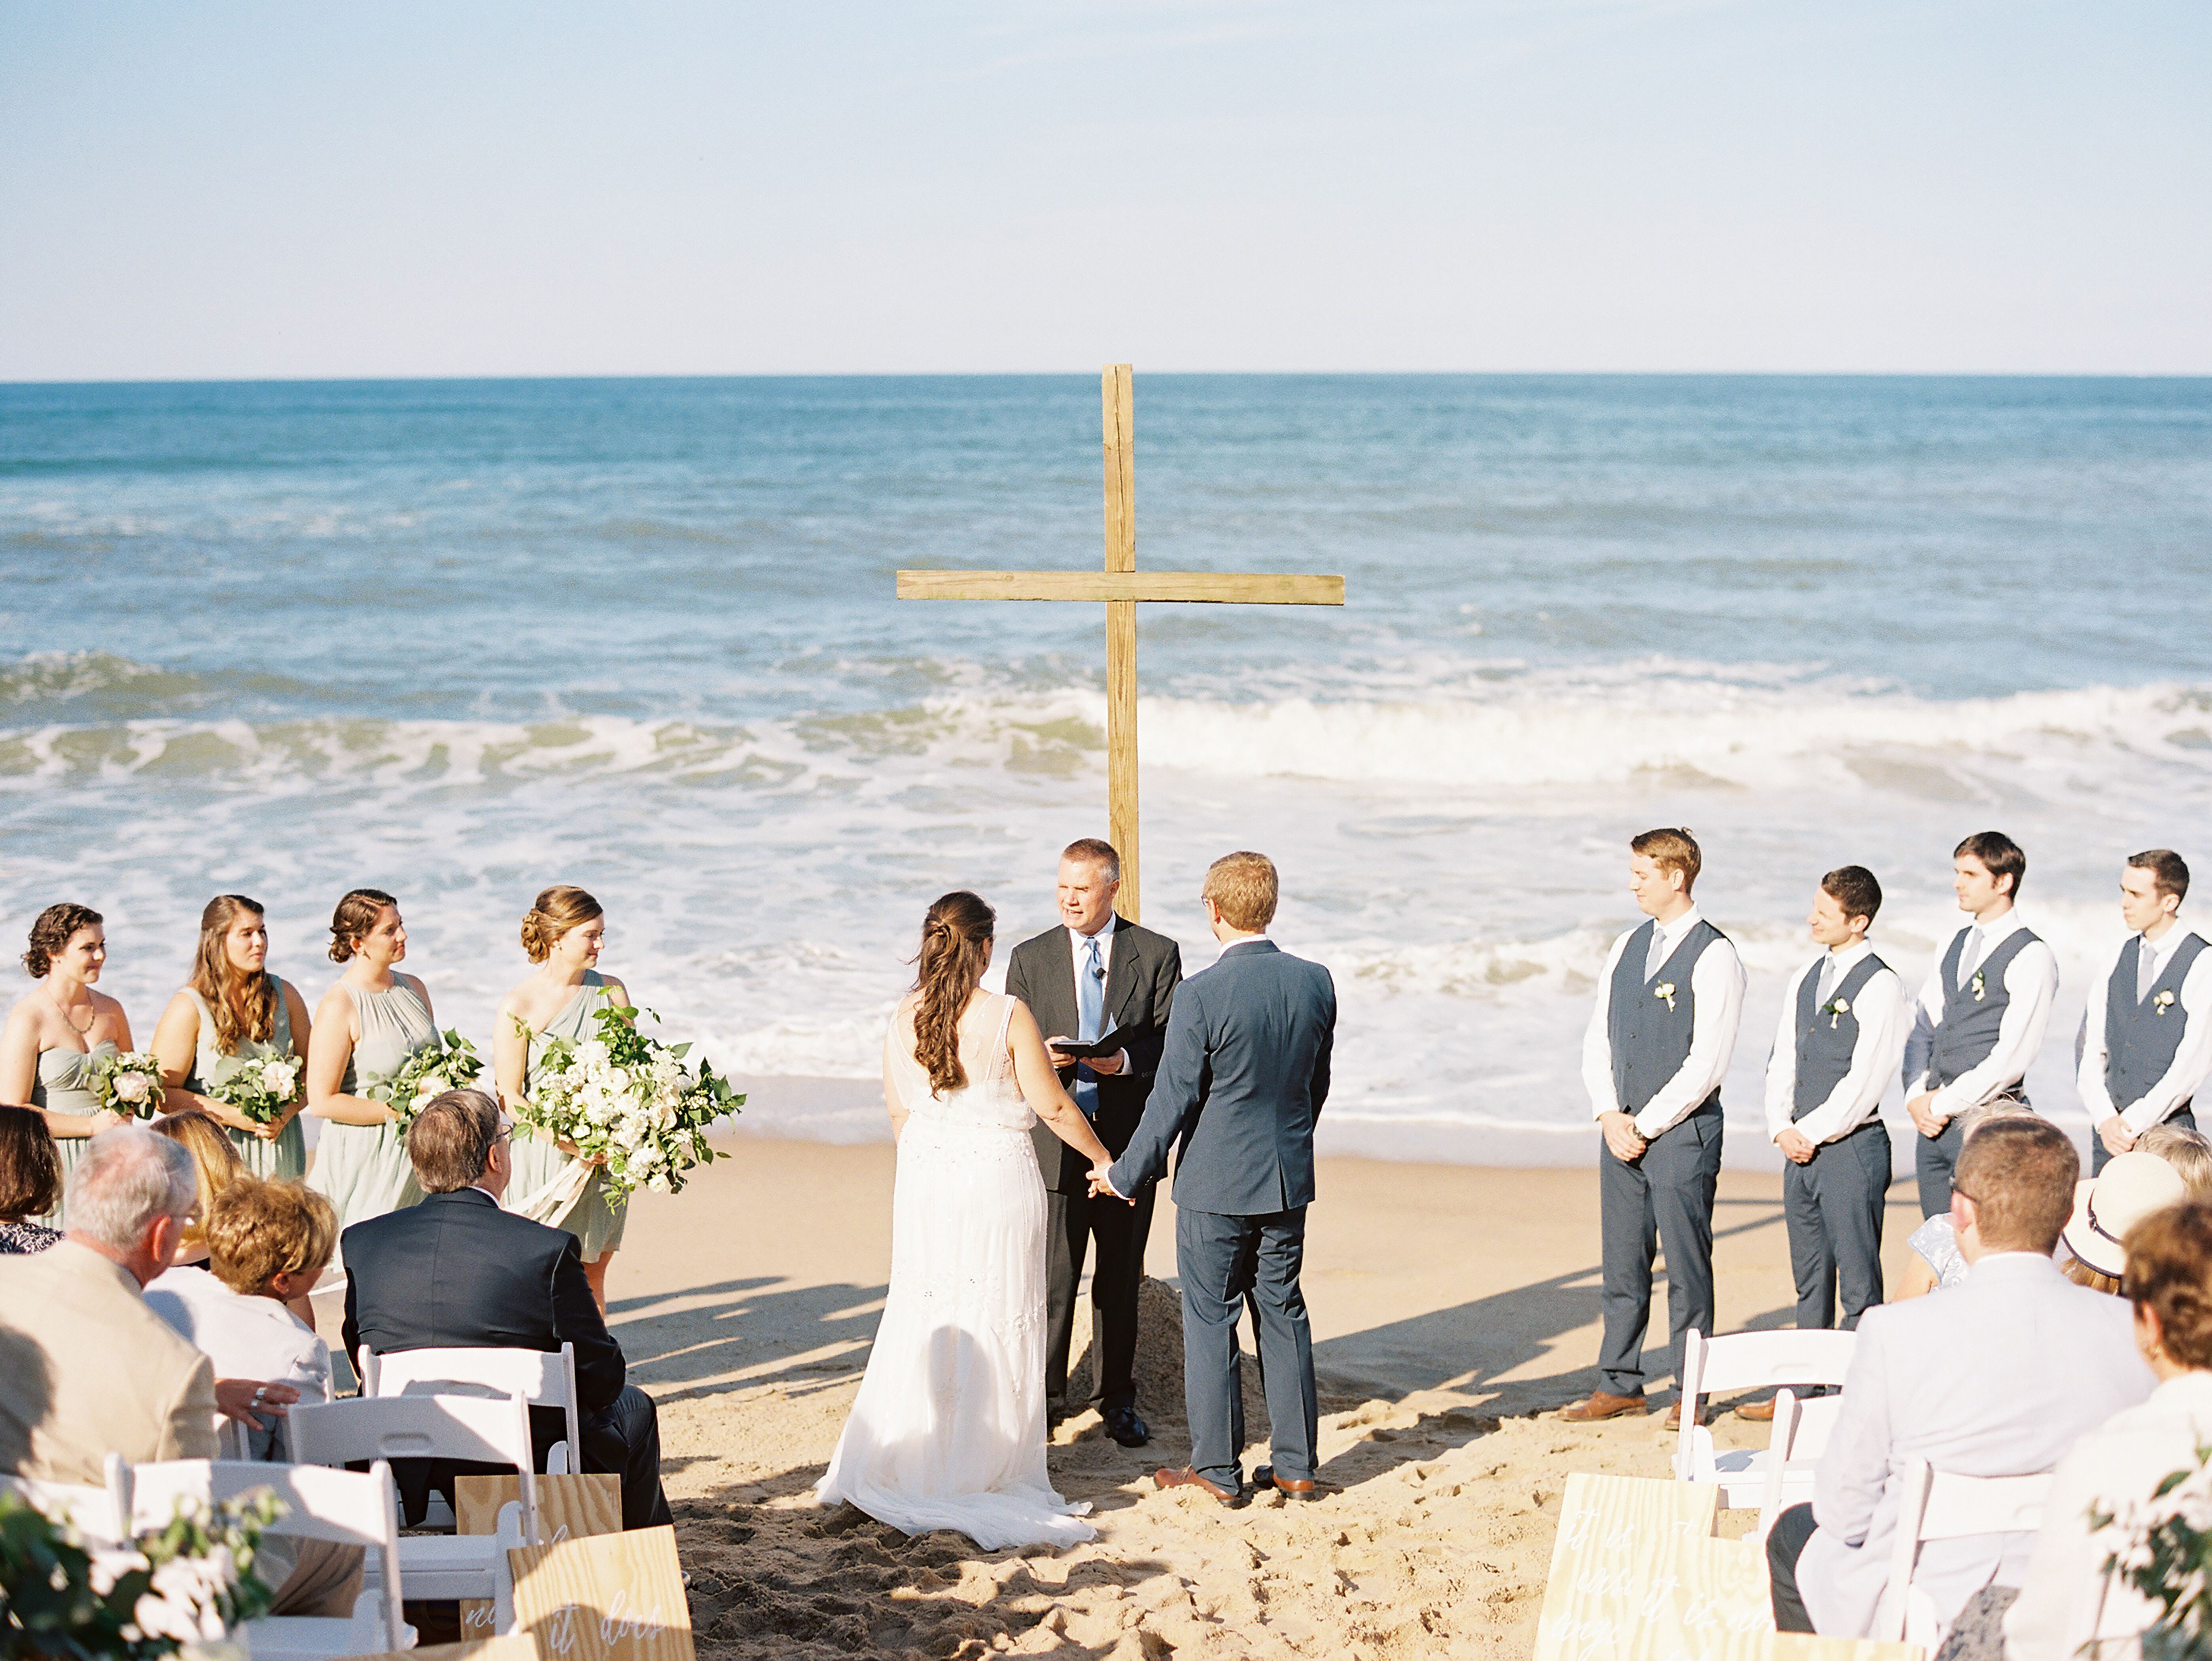 Simple, Romantic Beach Wedding Ceremony